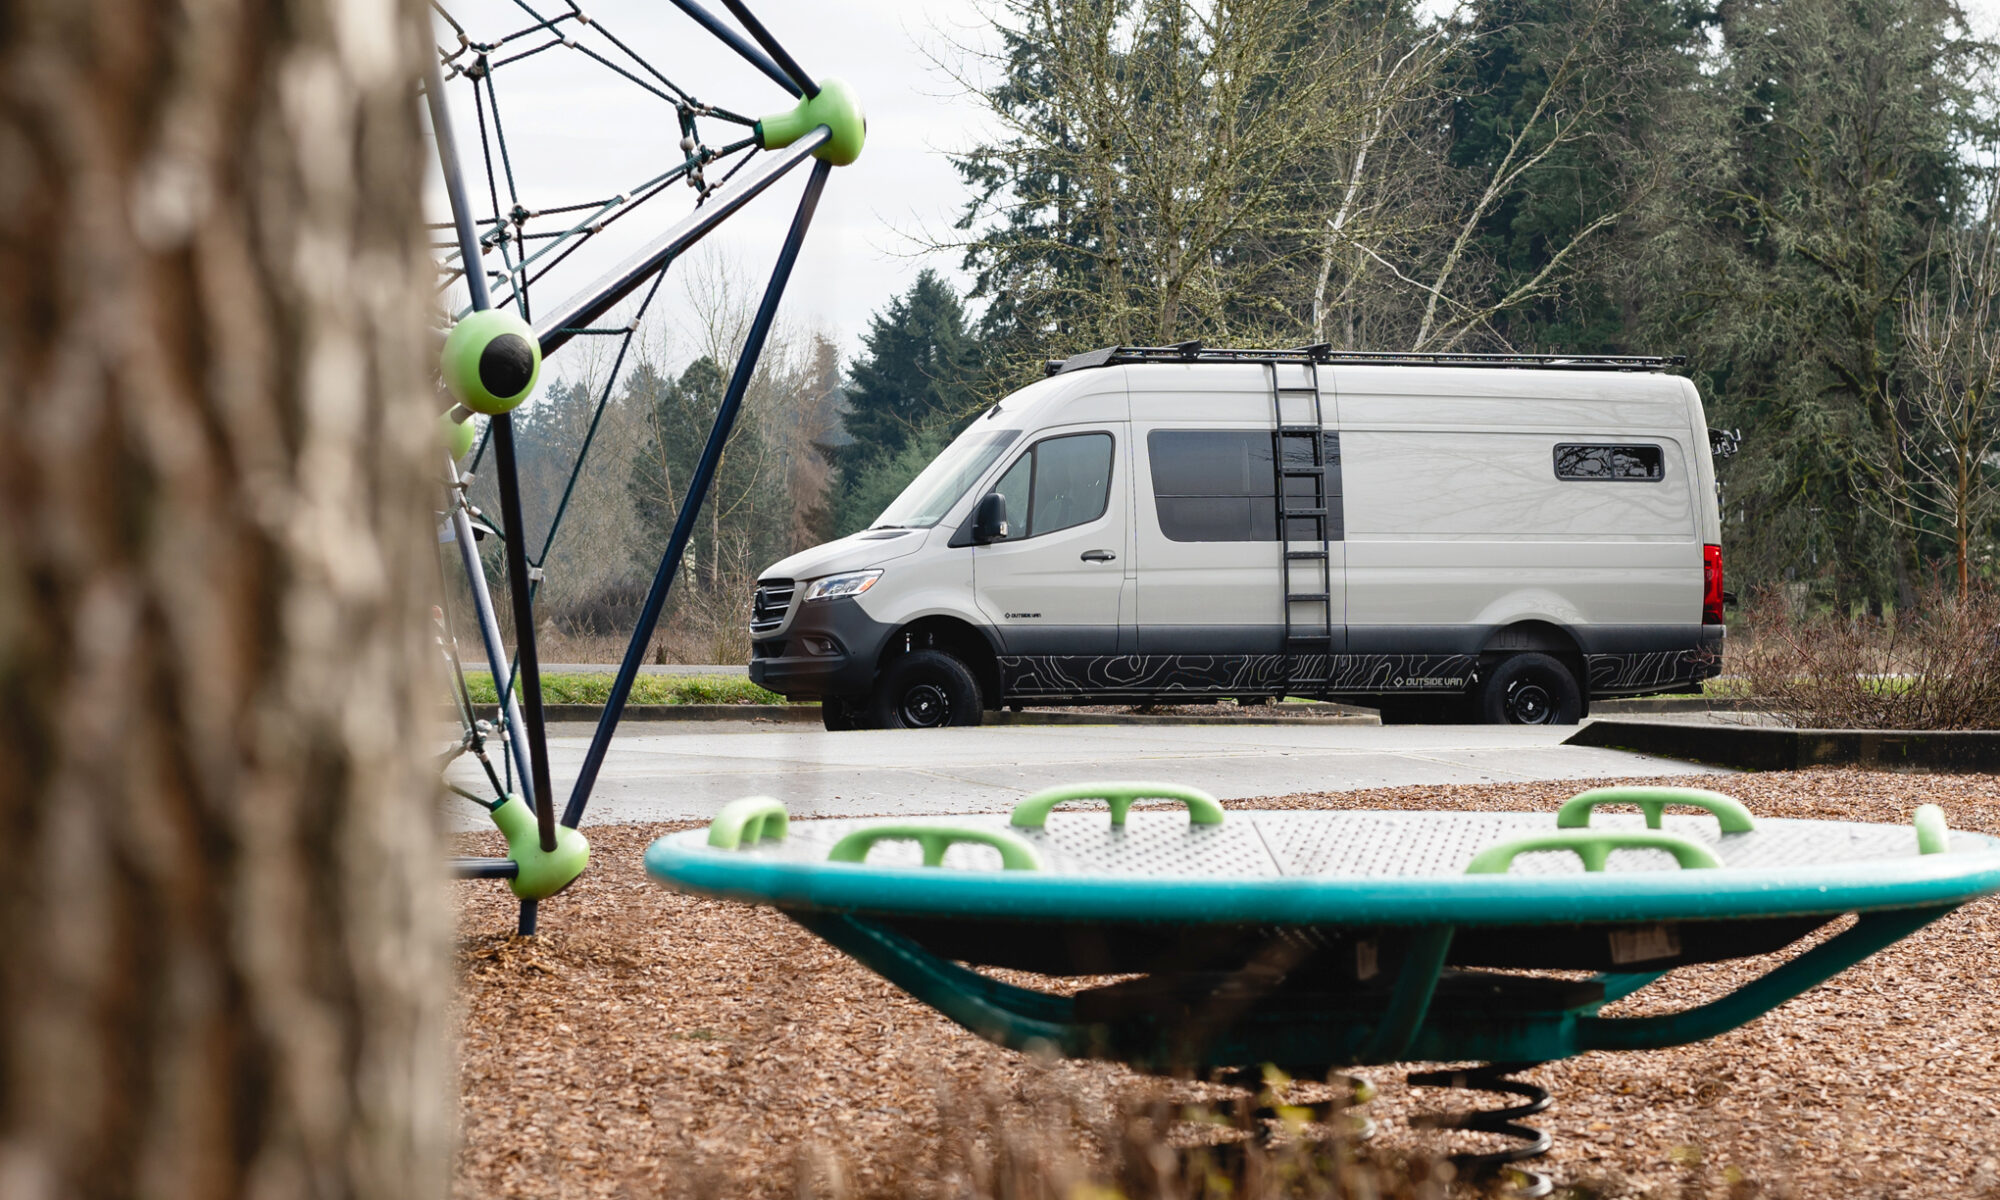 The Ouistiti camper van